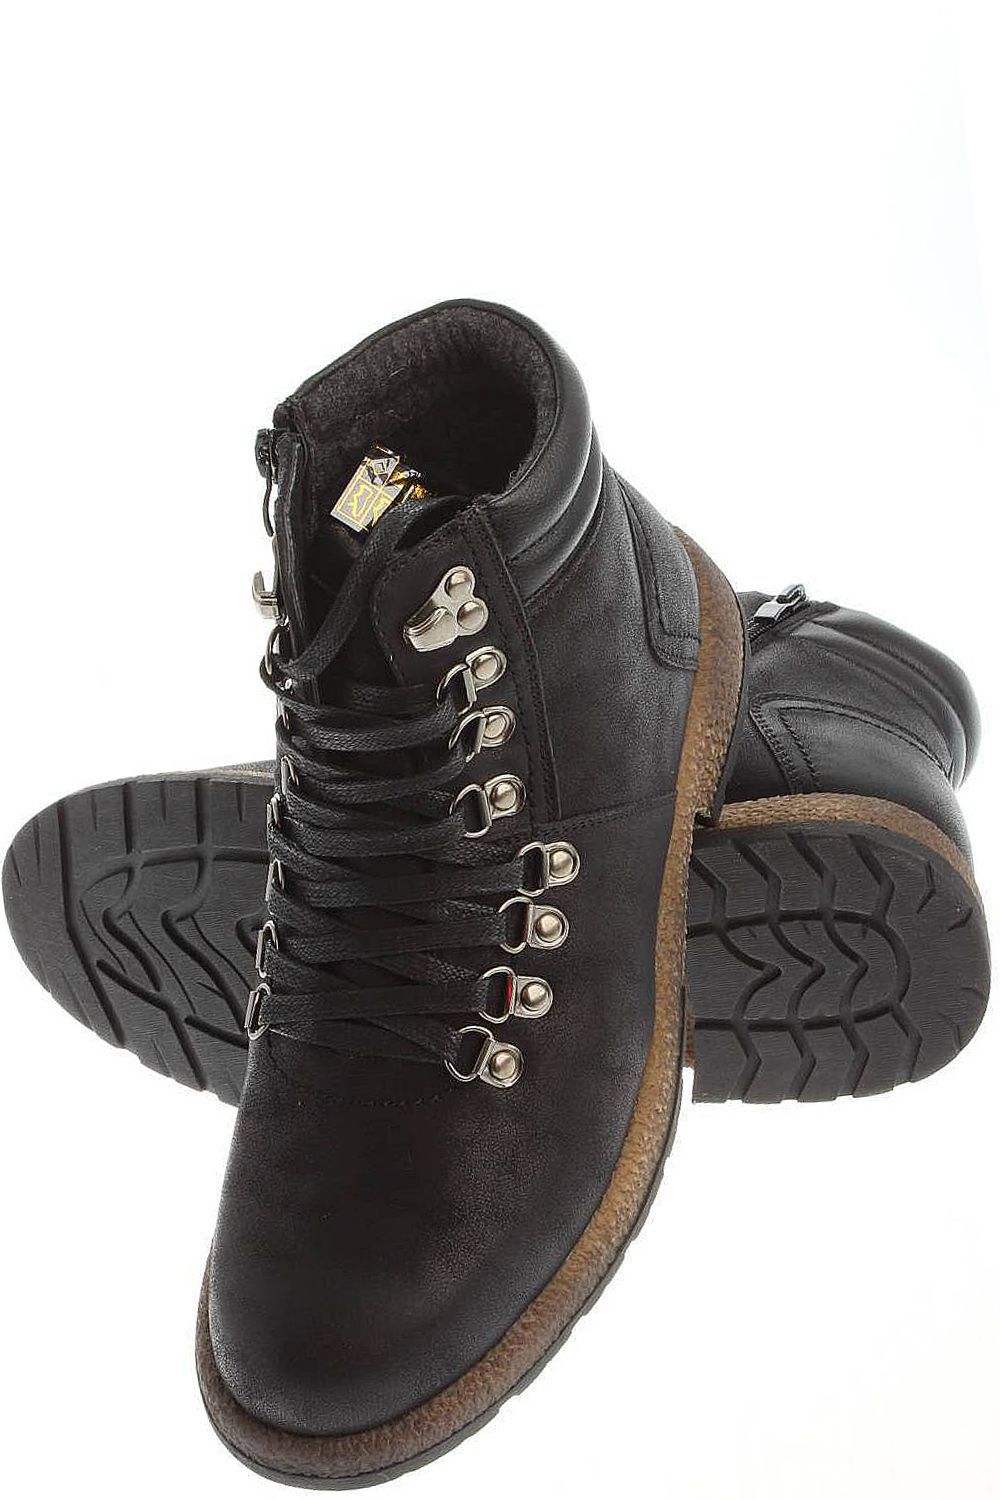 Ботинки Tesoro, размер 41, цвет черный 178668/12-01 - фото 8